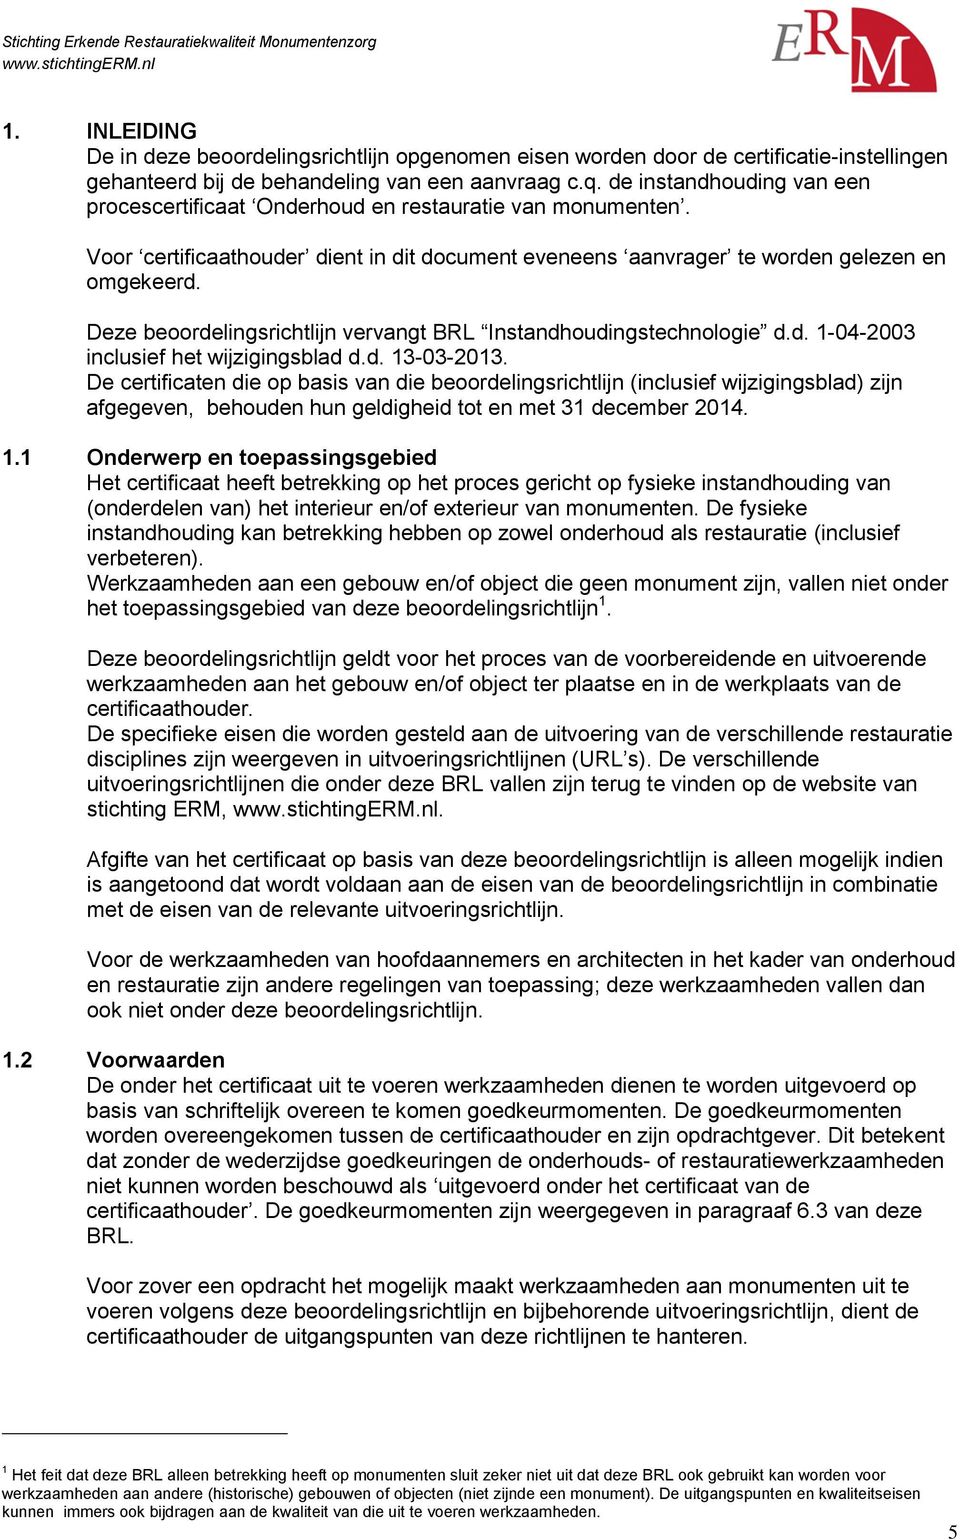 Deze beoordelingsrichtlijn vervangt BRL Instandhoudingstechnologie d.d. 1-04-2003 inclusief het wijzigingsblad d.d. 13-03-2013.